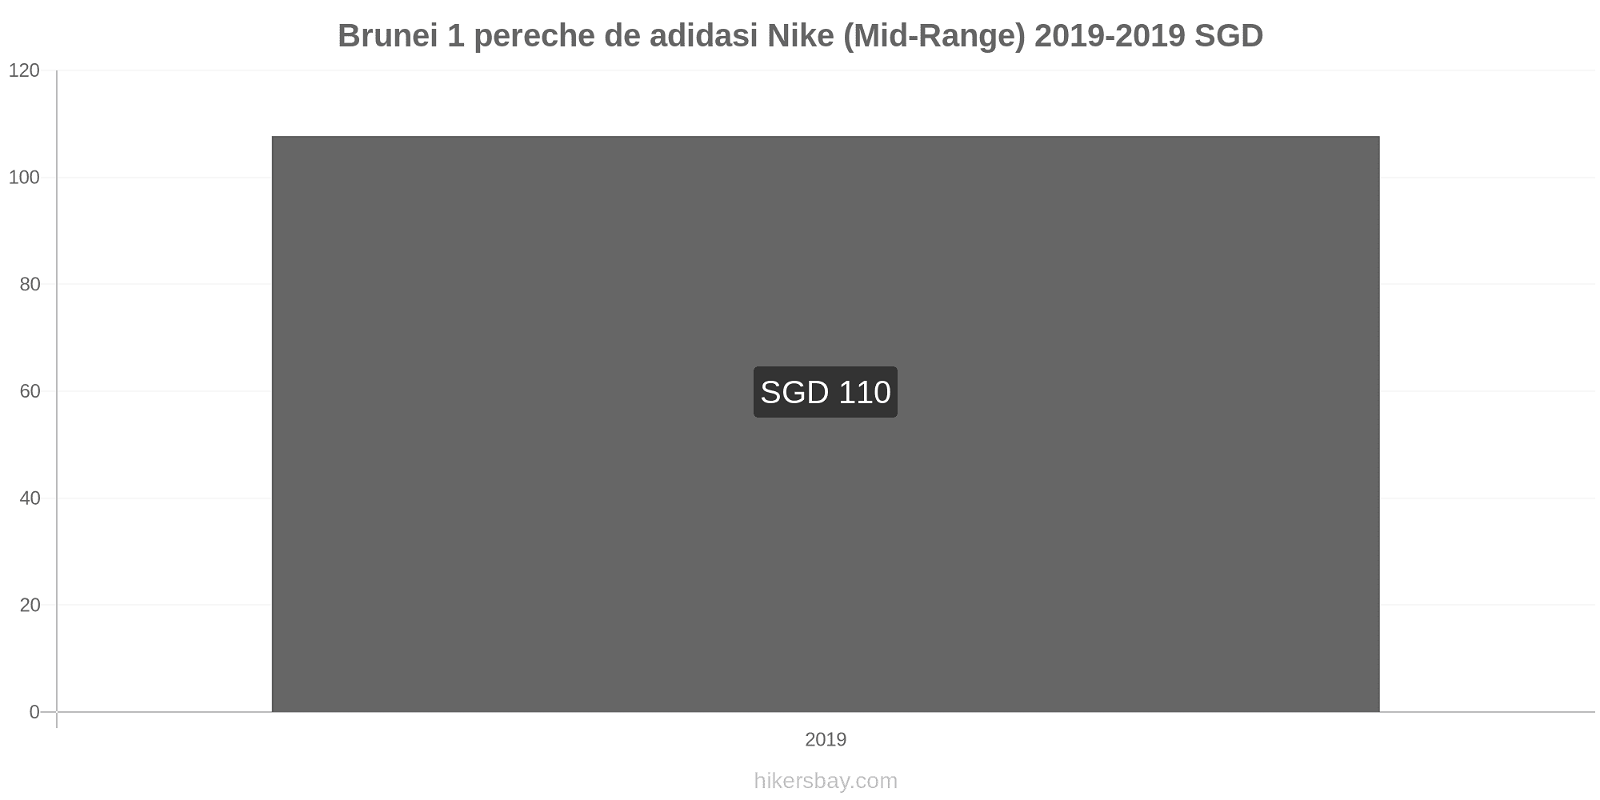 Brunei modificări de preț 1 pereche de adidasi Nike (Mid-Range) hikersbay.com